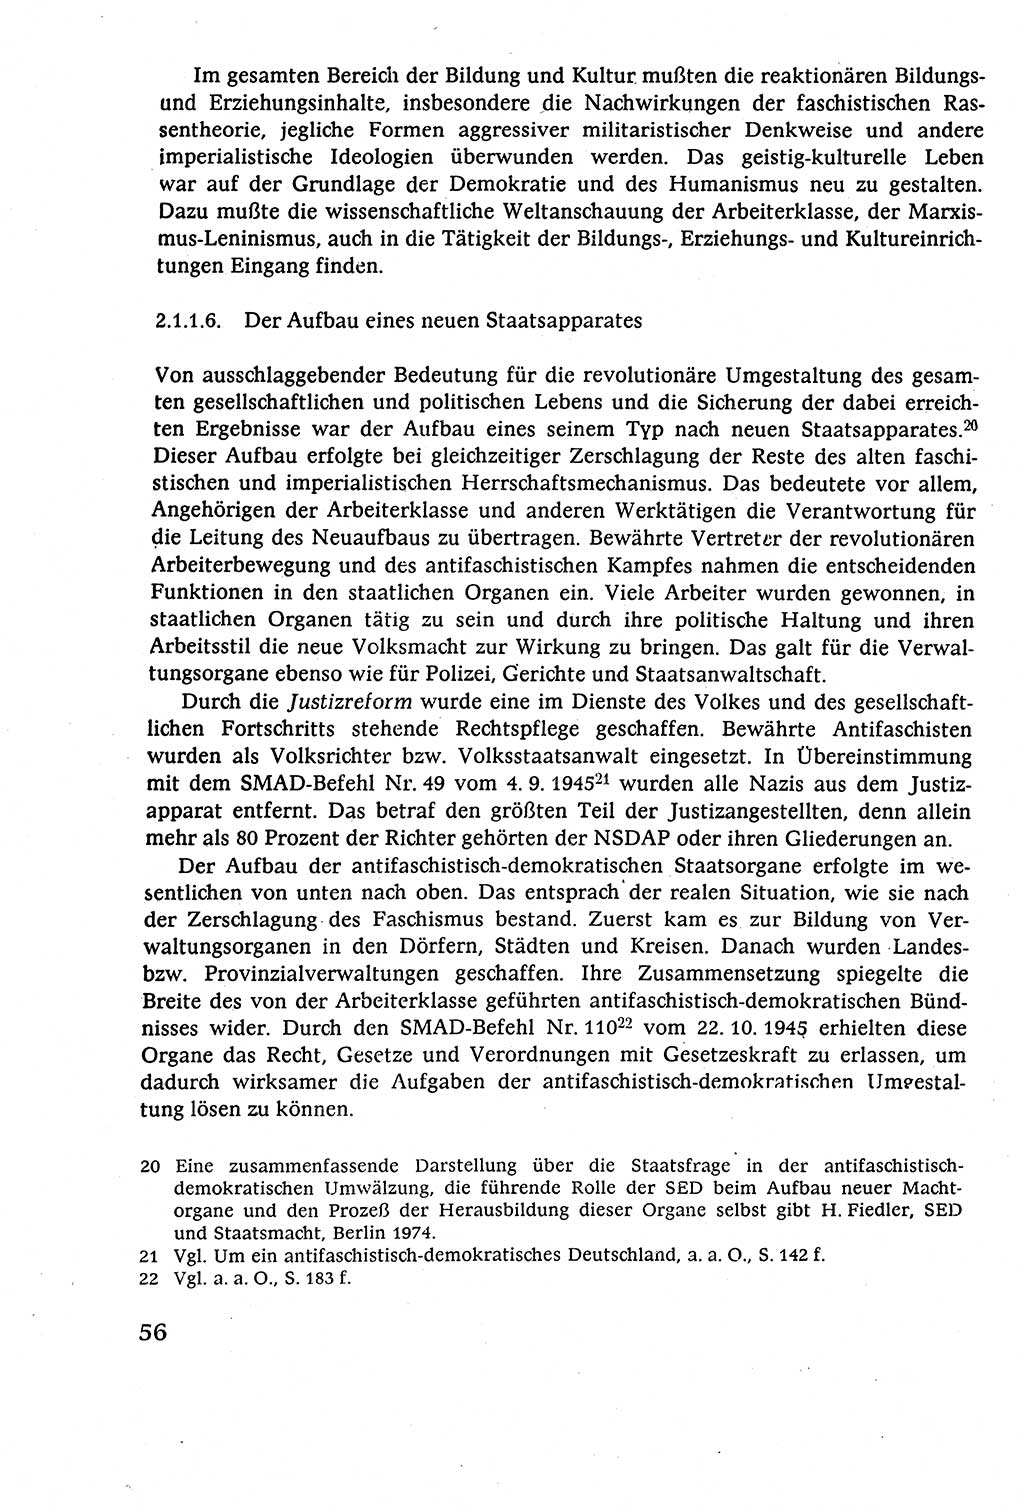 Staatsrecht der DDR (Deutsche Demokratische Republik), Lehrbuch 1977, Seite 56 (St.-R. DDR Lb. 1977, S. 56)